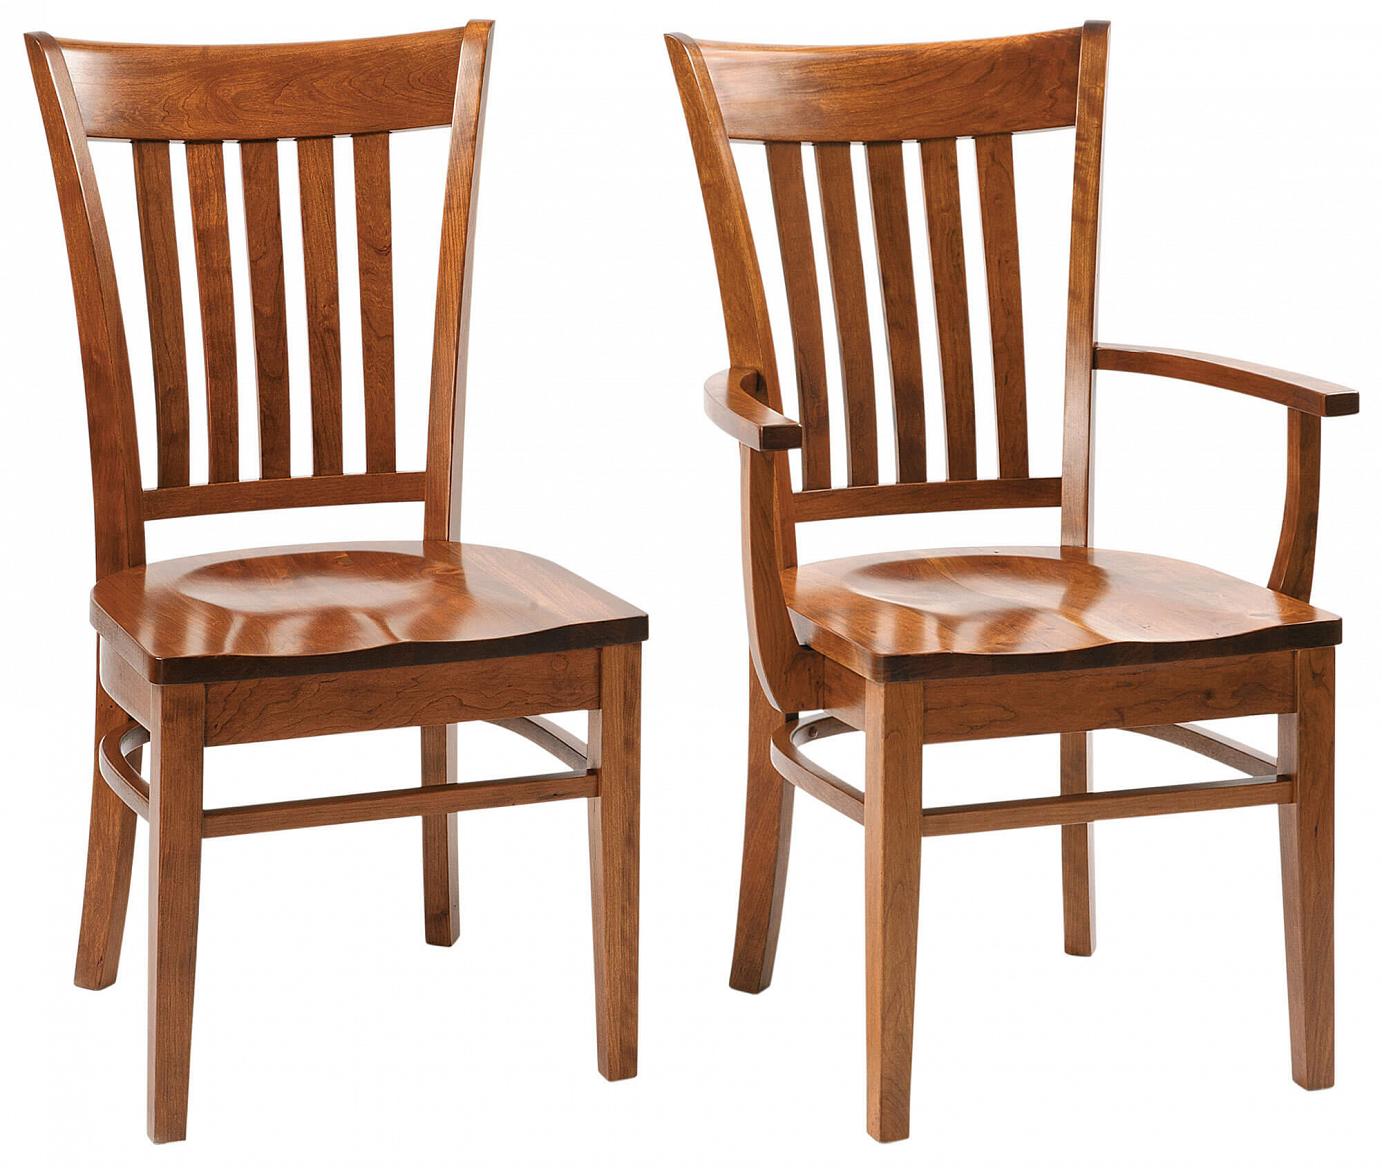 RH Yoder Harper Chairs